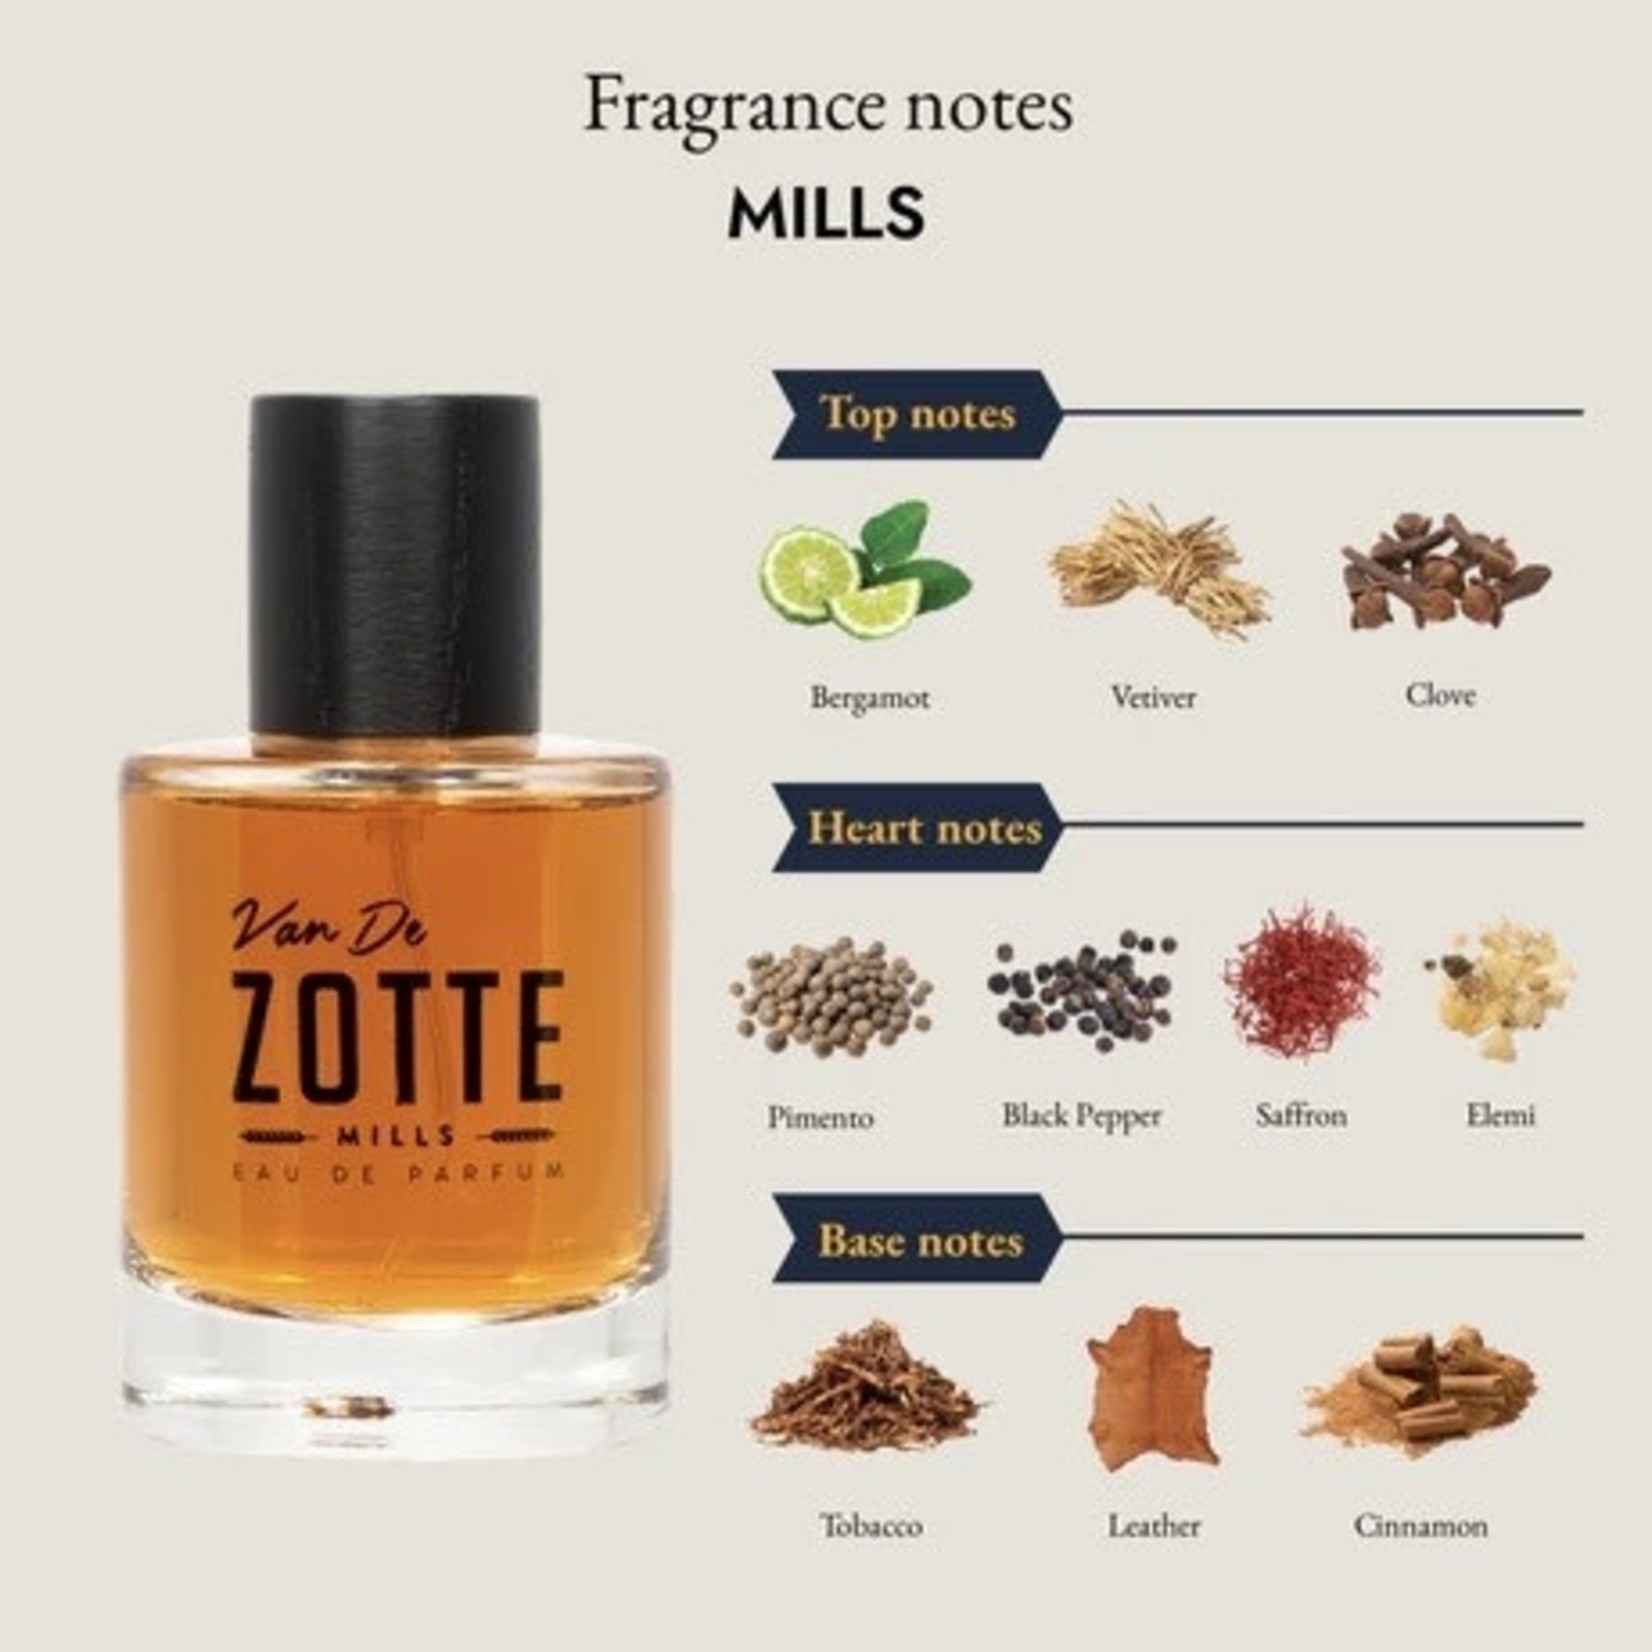 Van de Zotte Van De Zotte Parfum (twee geuren)